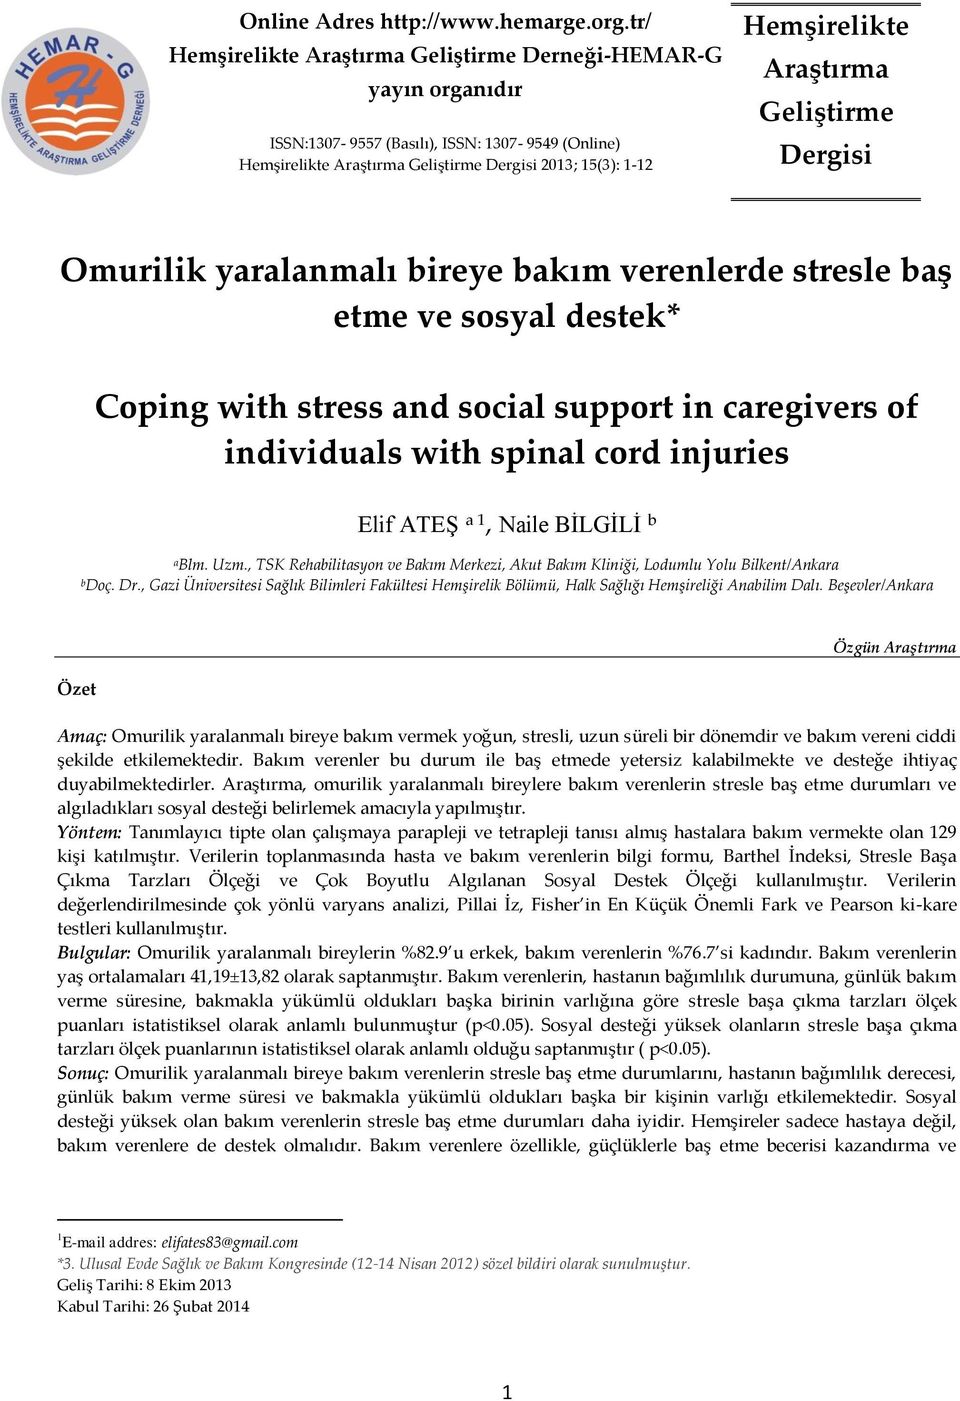 Araştırma Geliştirme Dergisi Omurilik yaralanmalı bireye bakım verenlerde stresle baş etme ve sosyal destek* Coping with stress and social support in caregivers of individuals with spinal cord